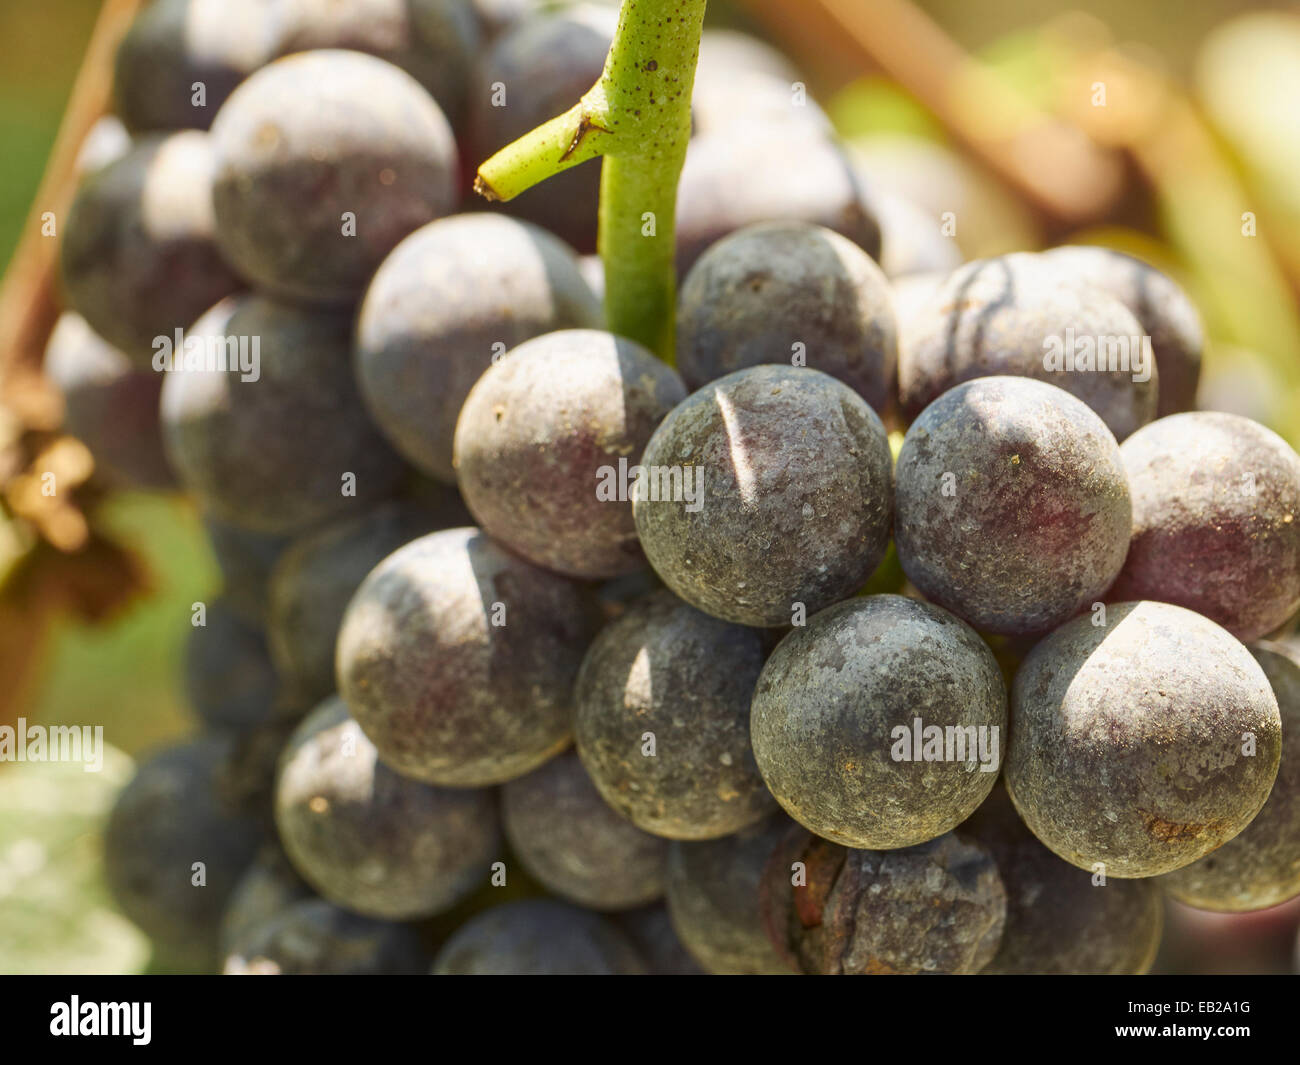 Nebbiolo Grapes on the vine, LaMora, Italy Stock Photo